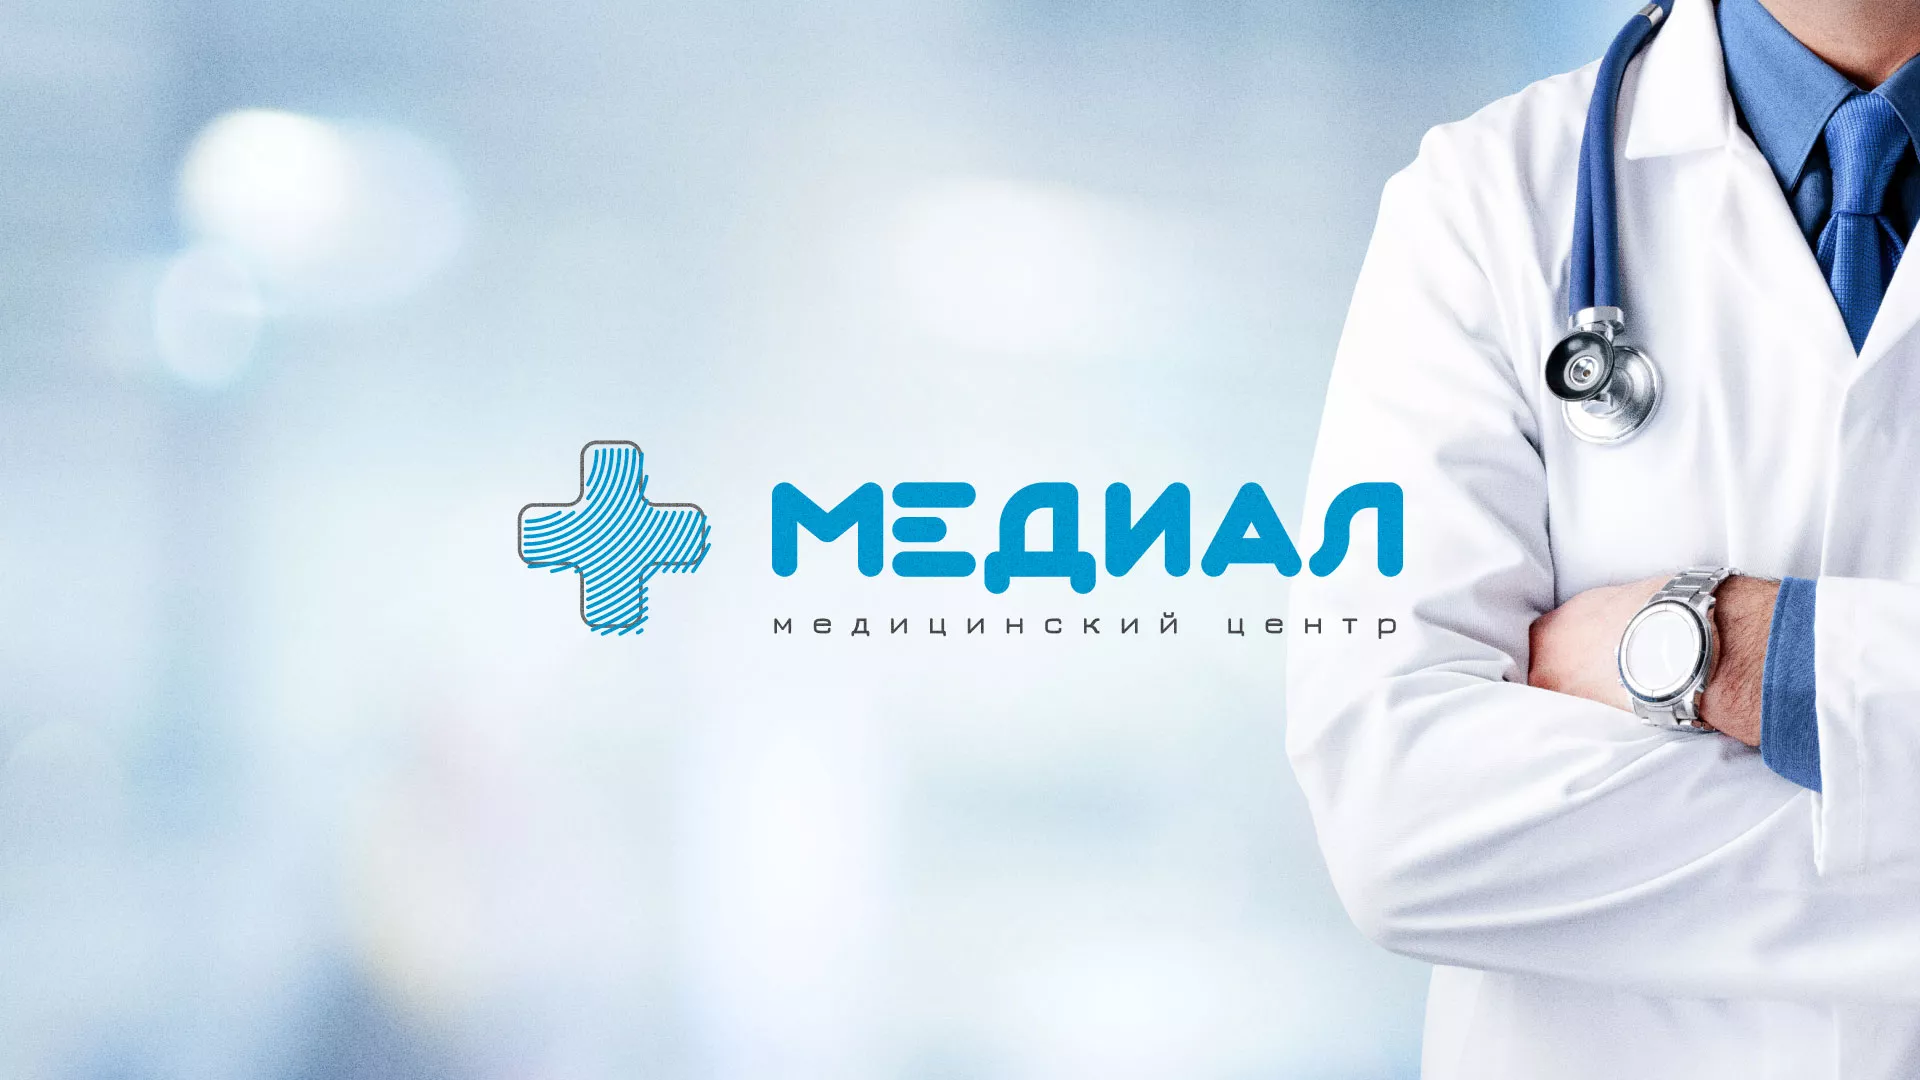 Создание сайта для медицинского центра «Медиал» в Шебекино